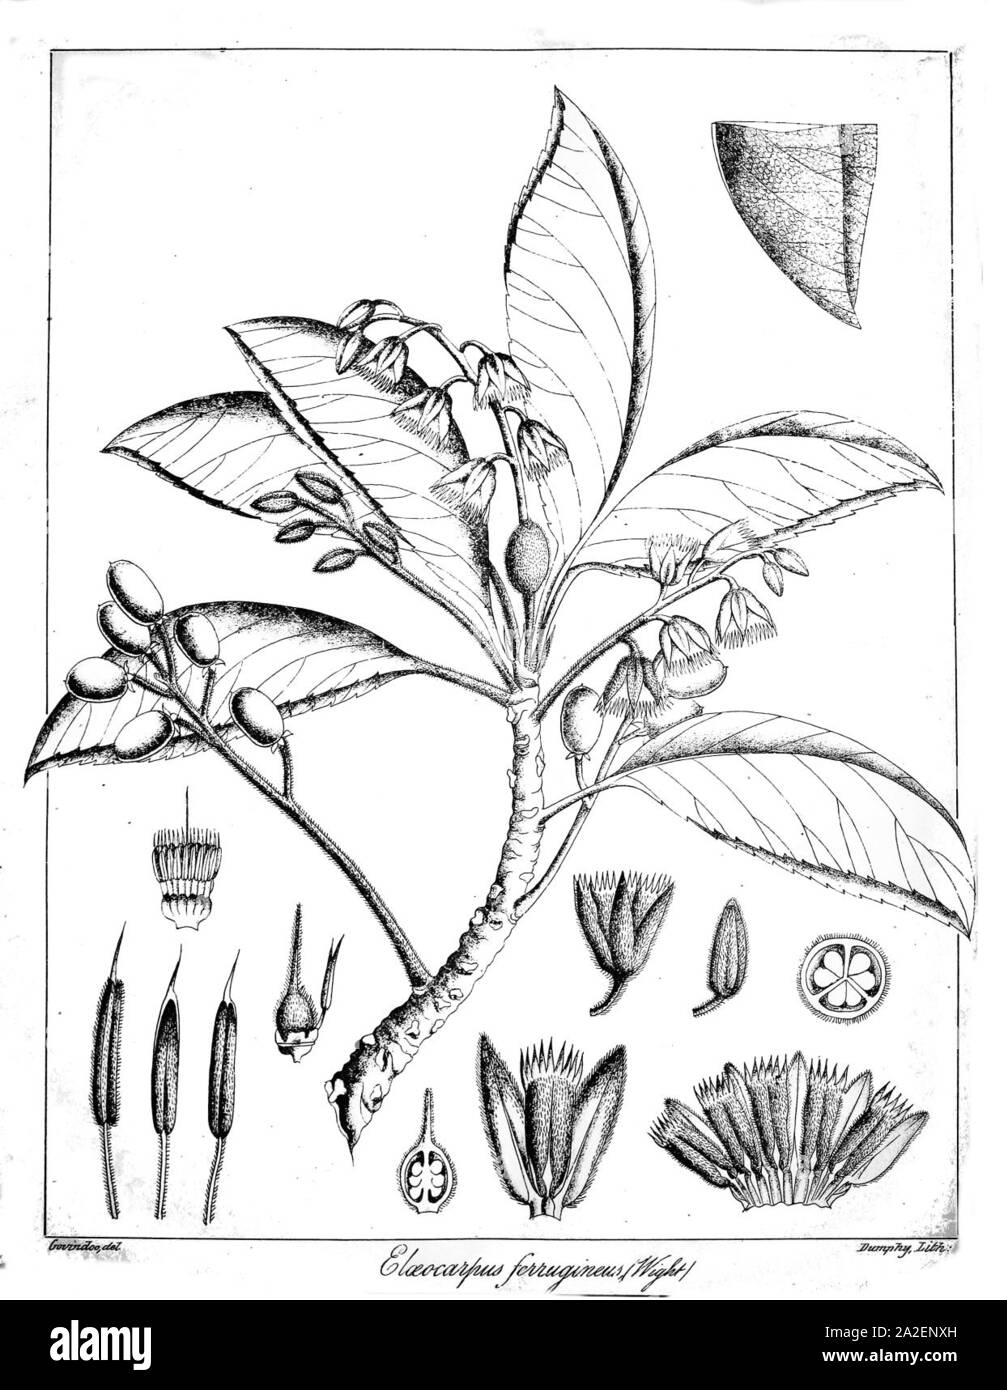 Elaeocarpus ferrugineus Govindoo. Stock Photo